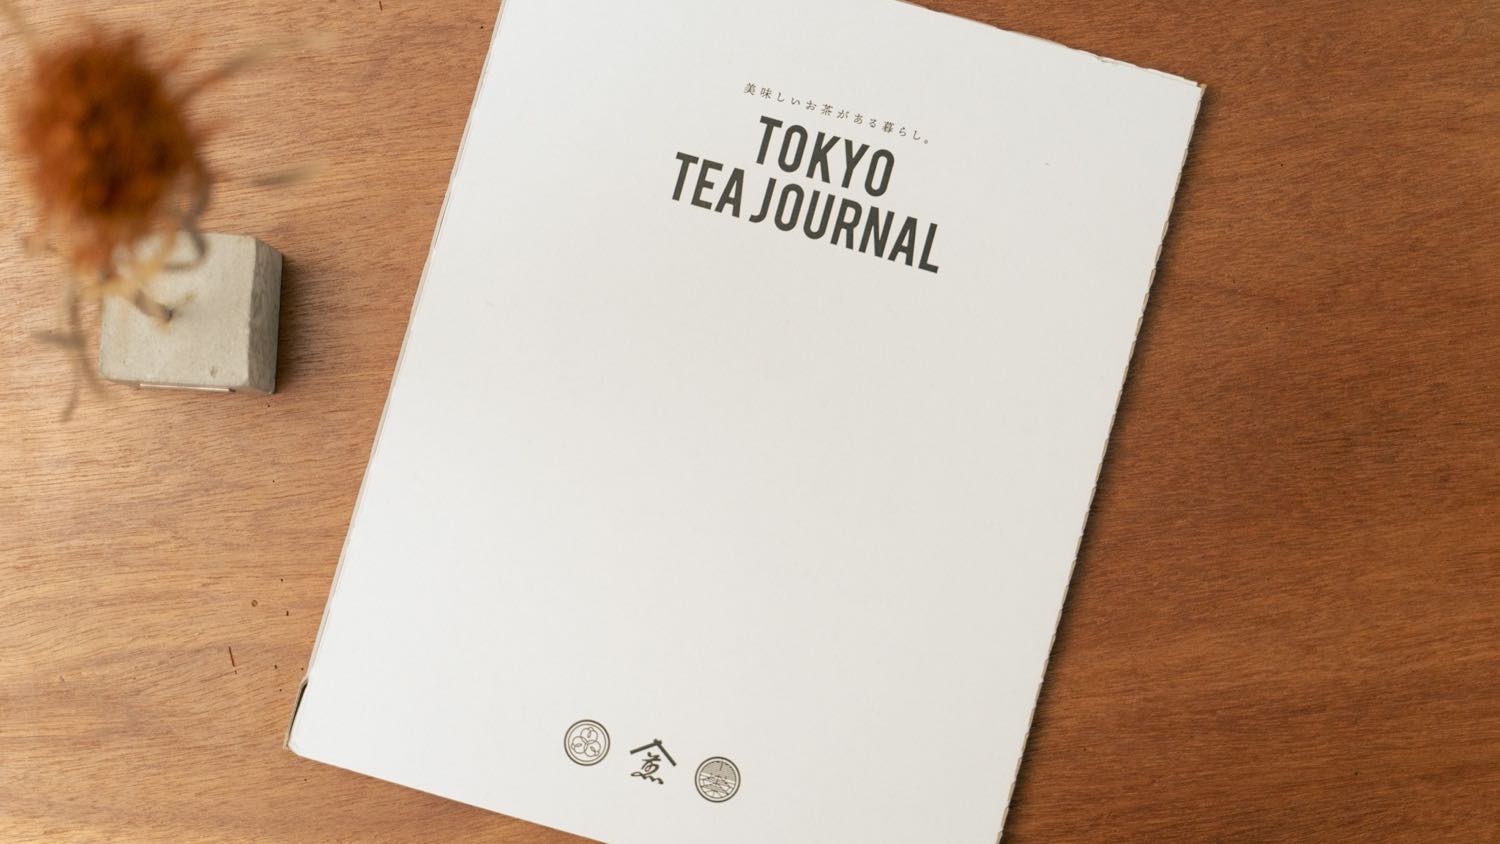 『TOKYO TEA JOURNAL』のパッケージ。